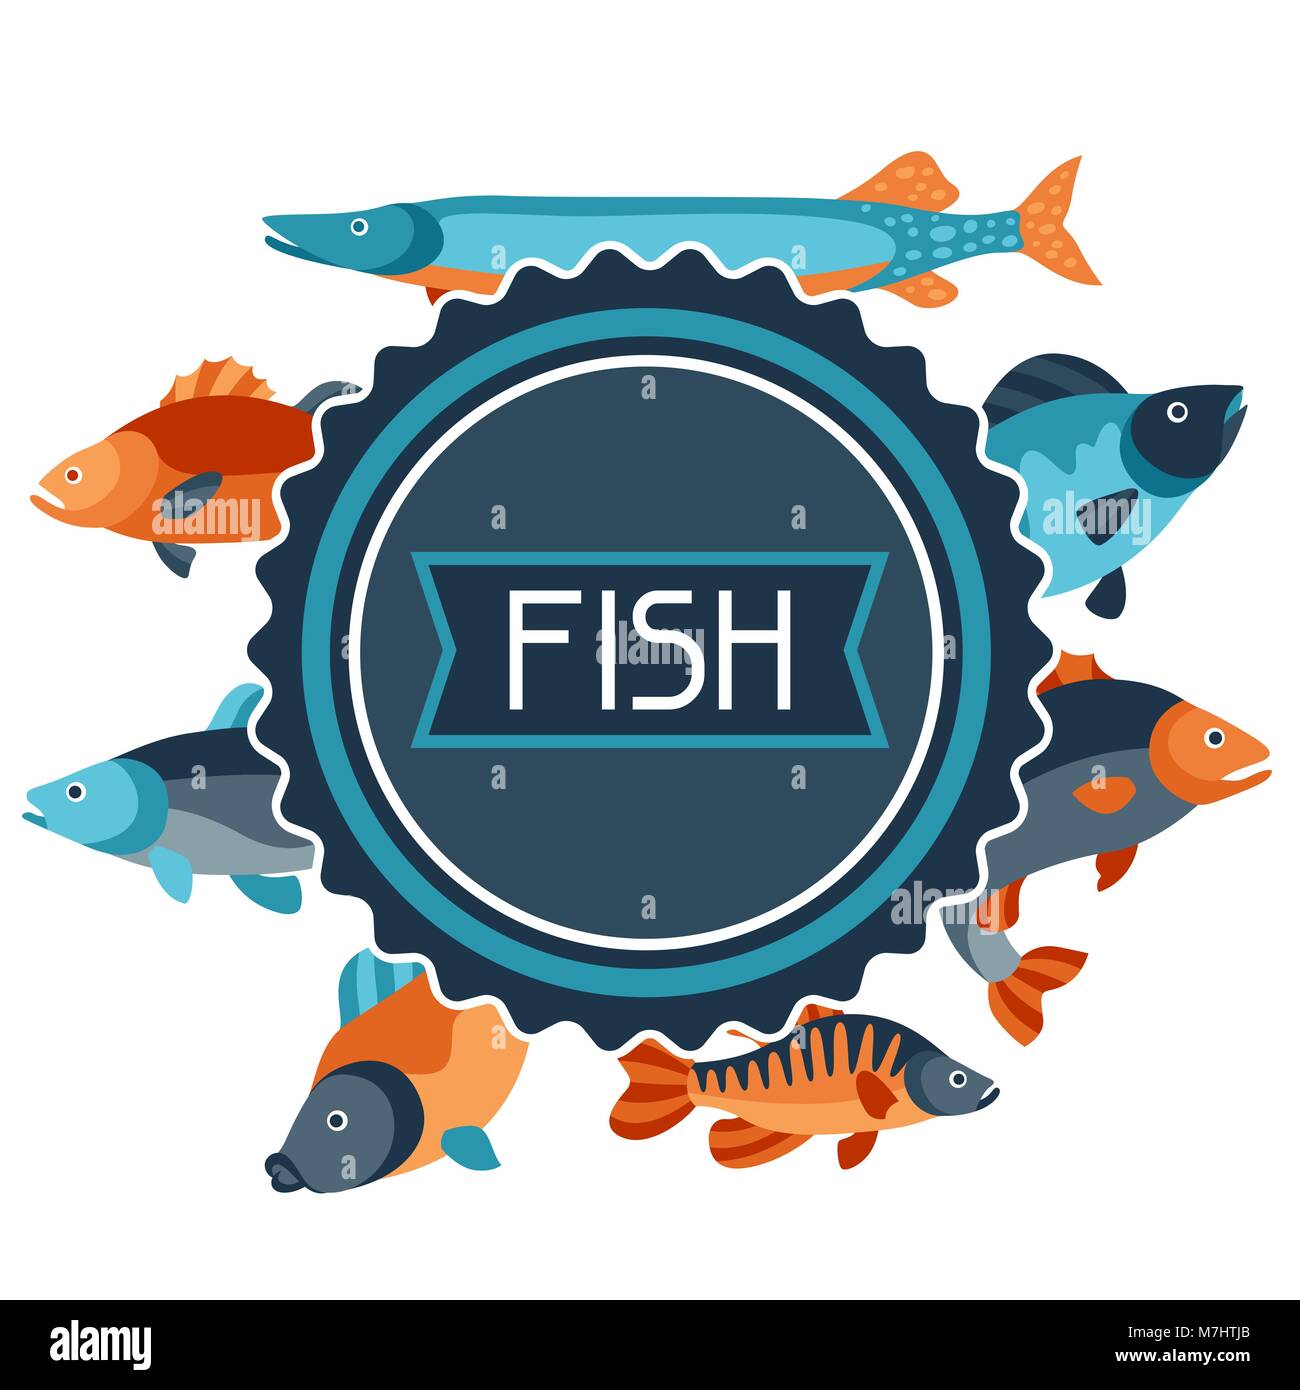 Sfondo con vari tipi di pesci. Immagine per opuscoli pubblicitari, banner, flayers, articolo e social media Illustrazione Vettoriale